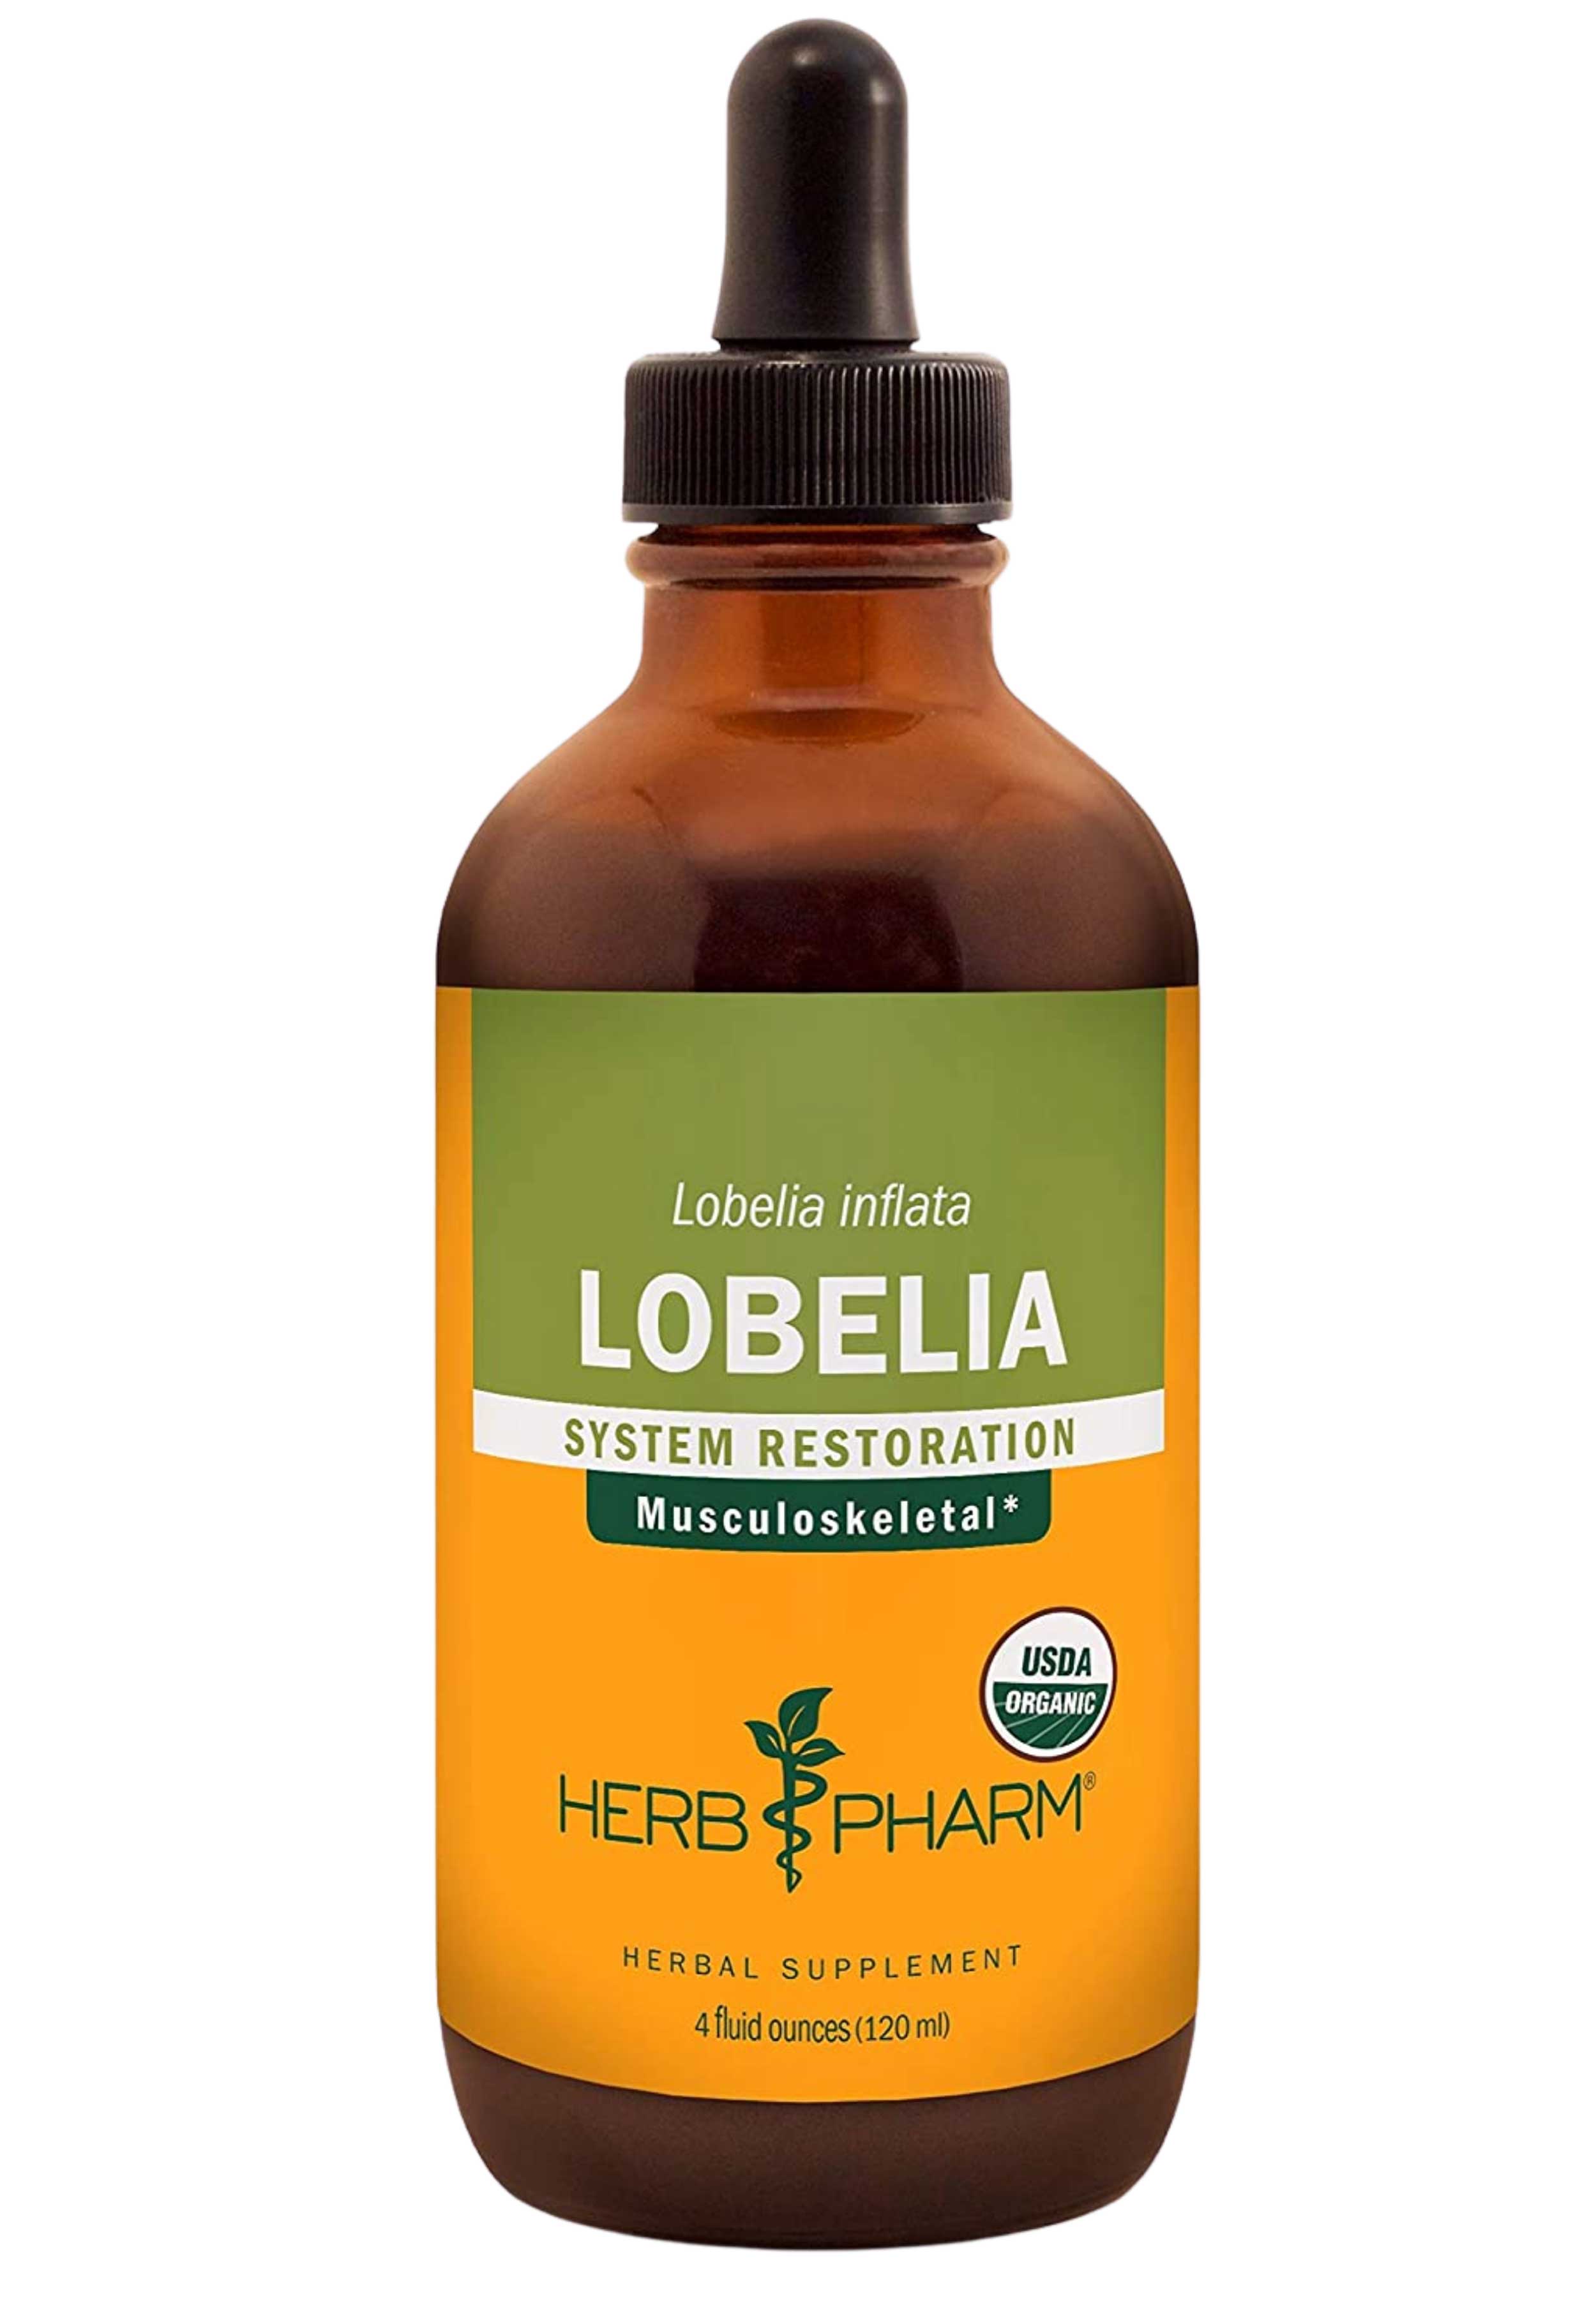 Herb Pharm Lobelia